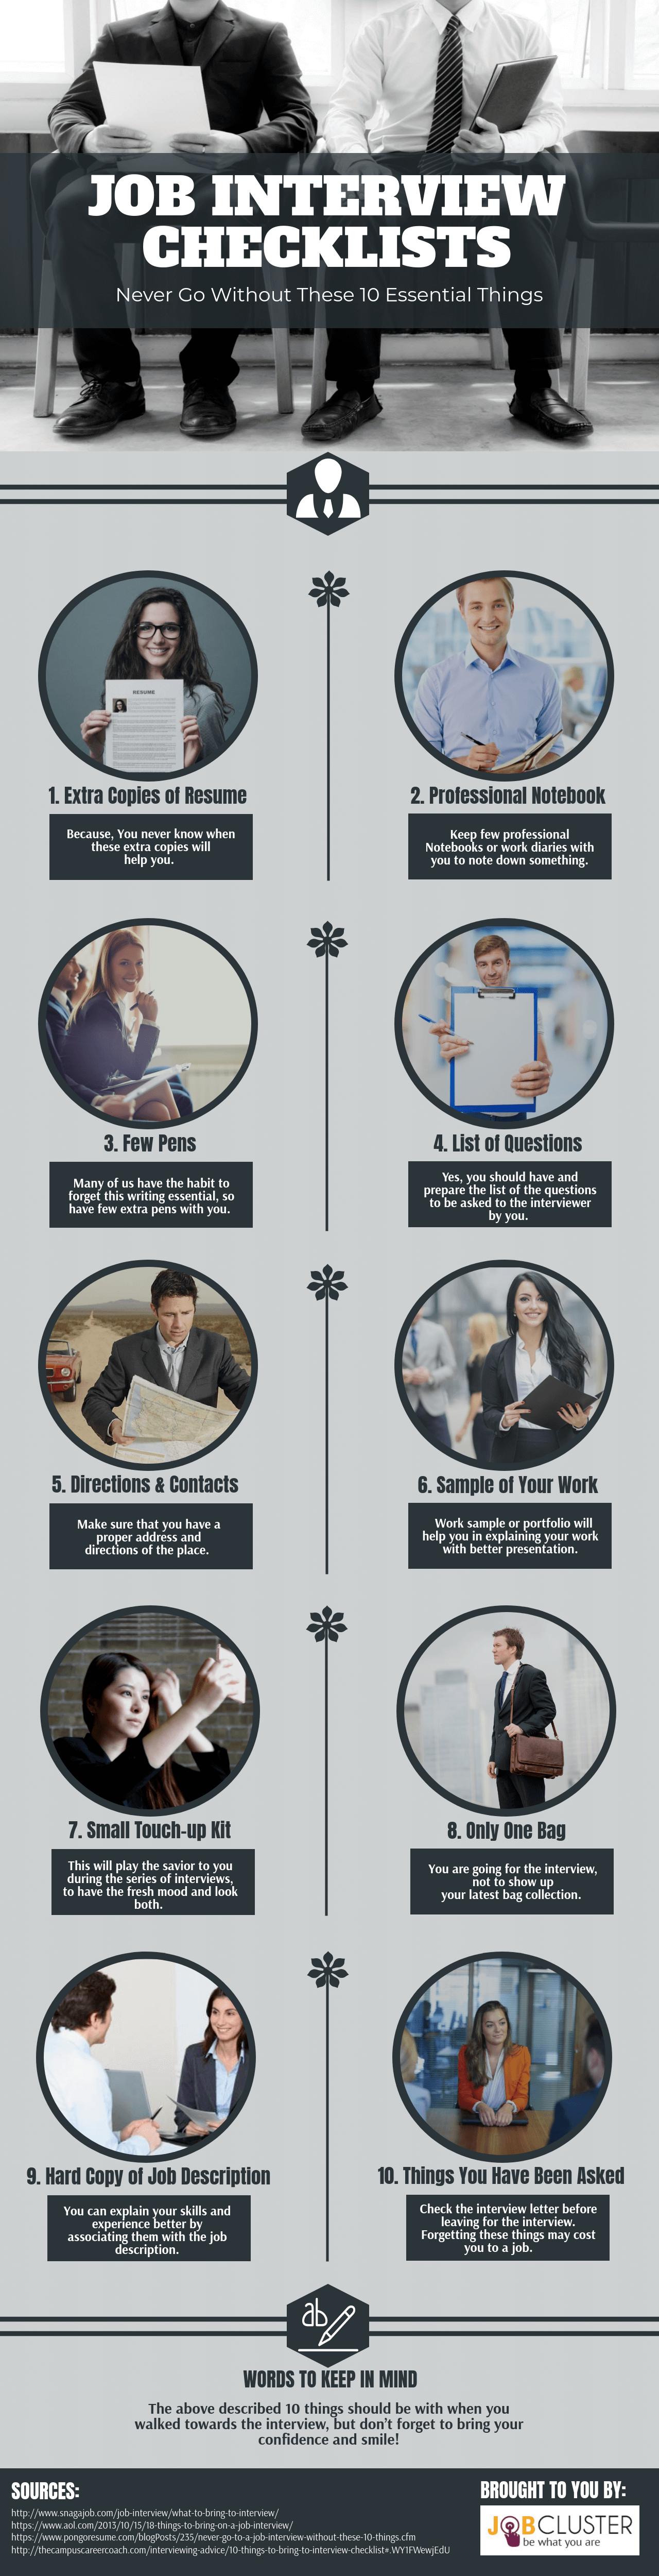 Job Interview Checklist Infographic